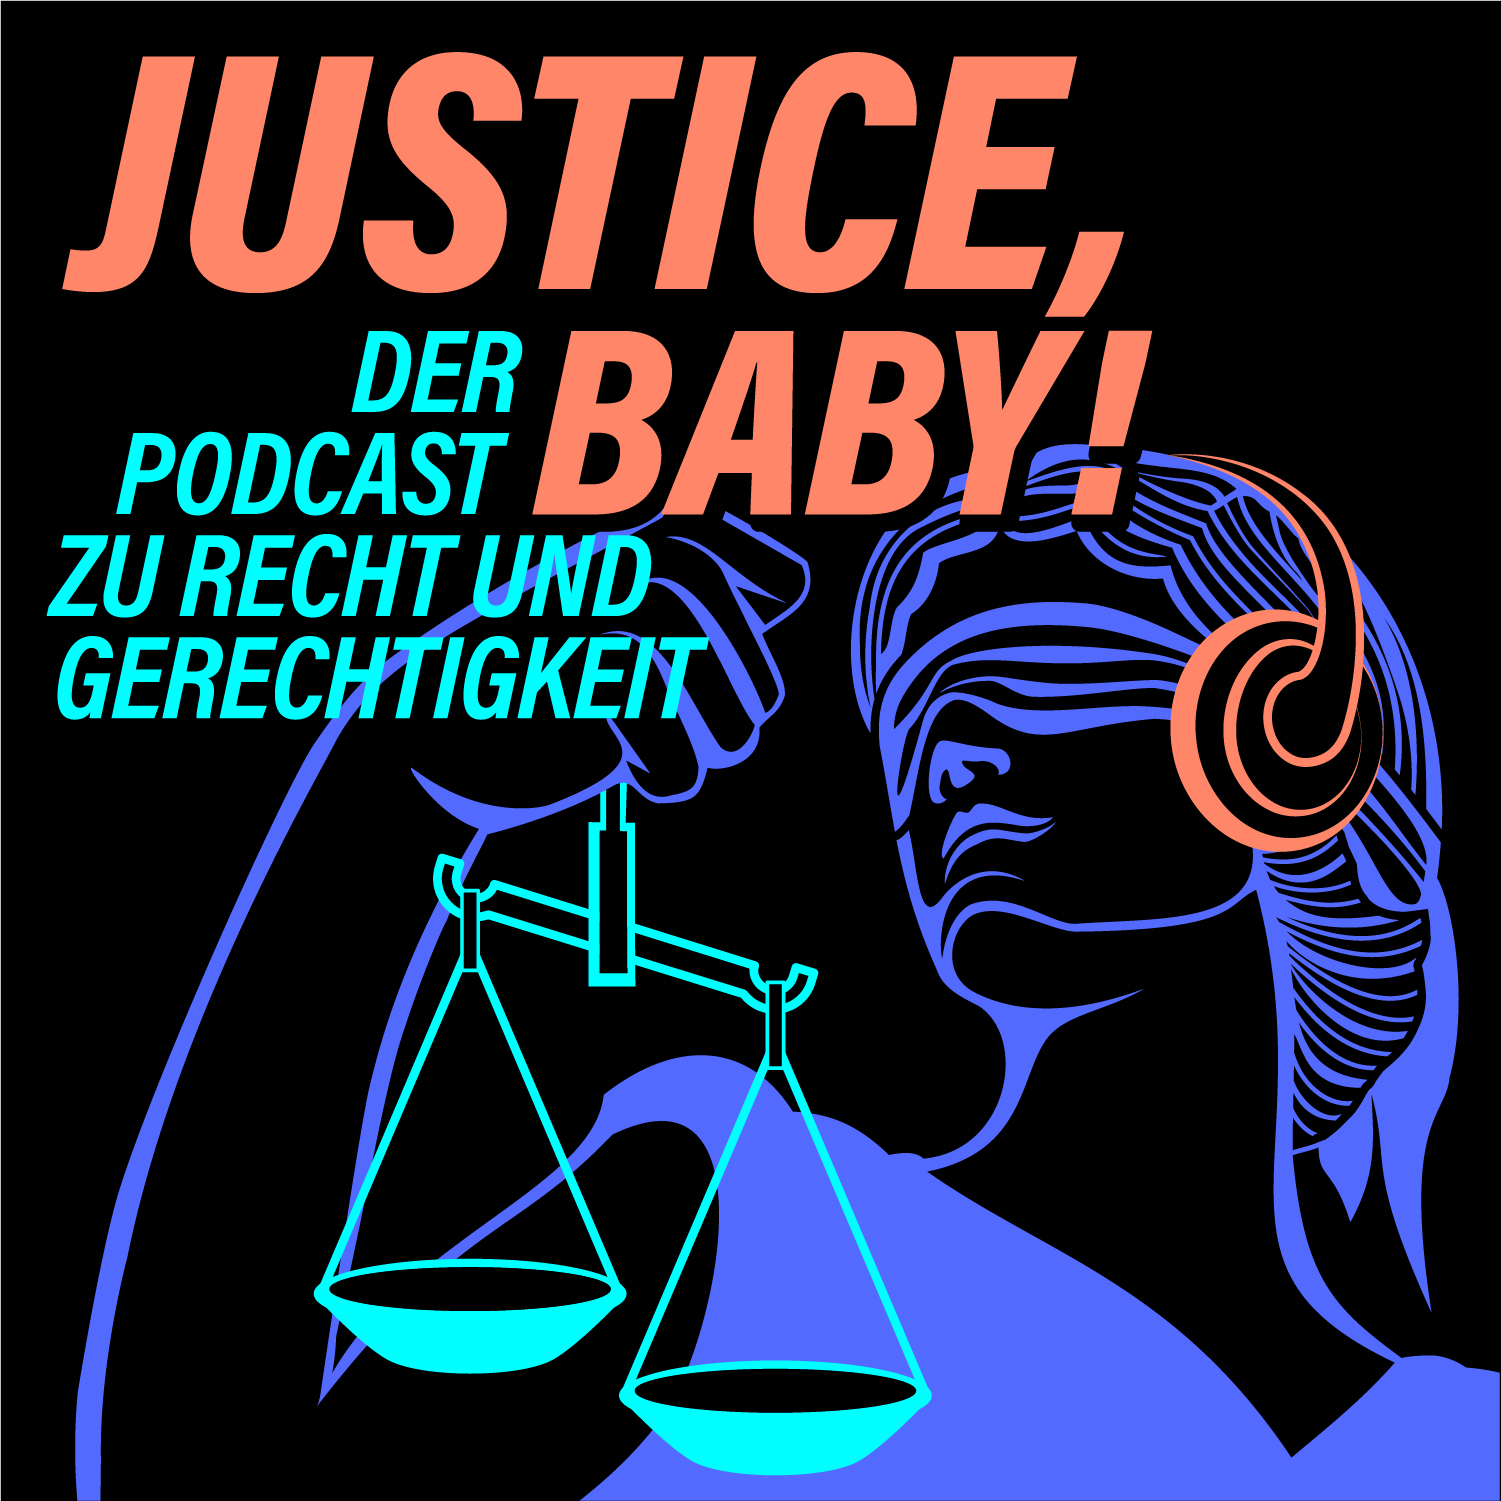 Justice Baby! - Der Podcast zu Recht und Gerechtigkeit